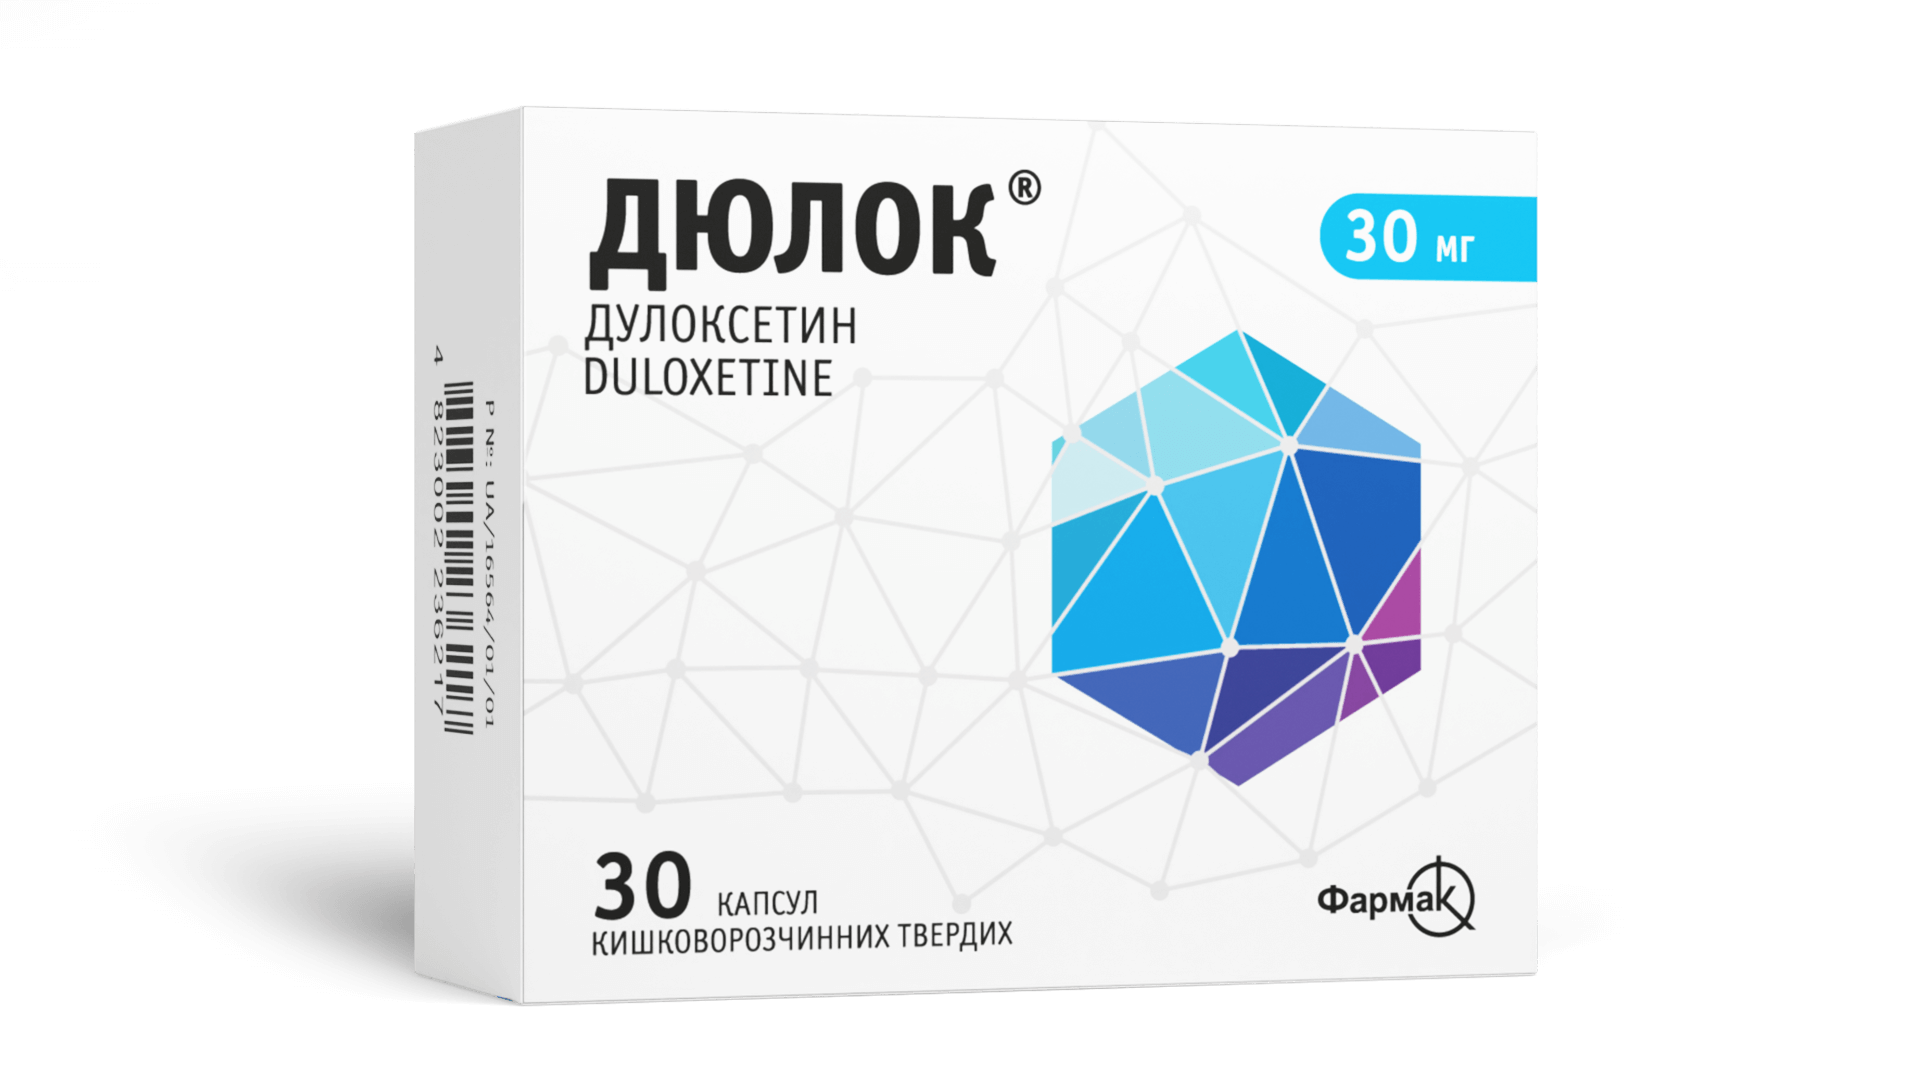 Дюлок® 30 мг (1)